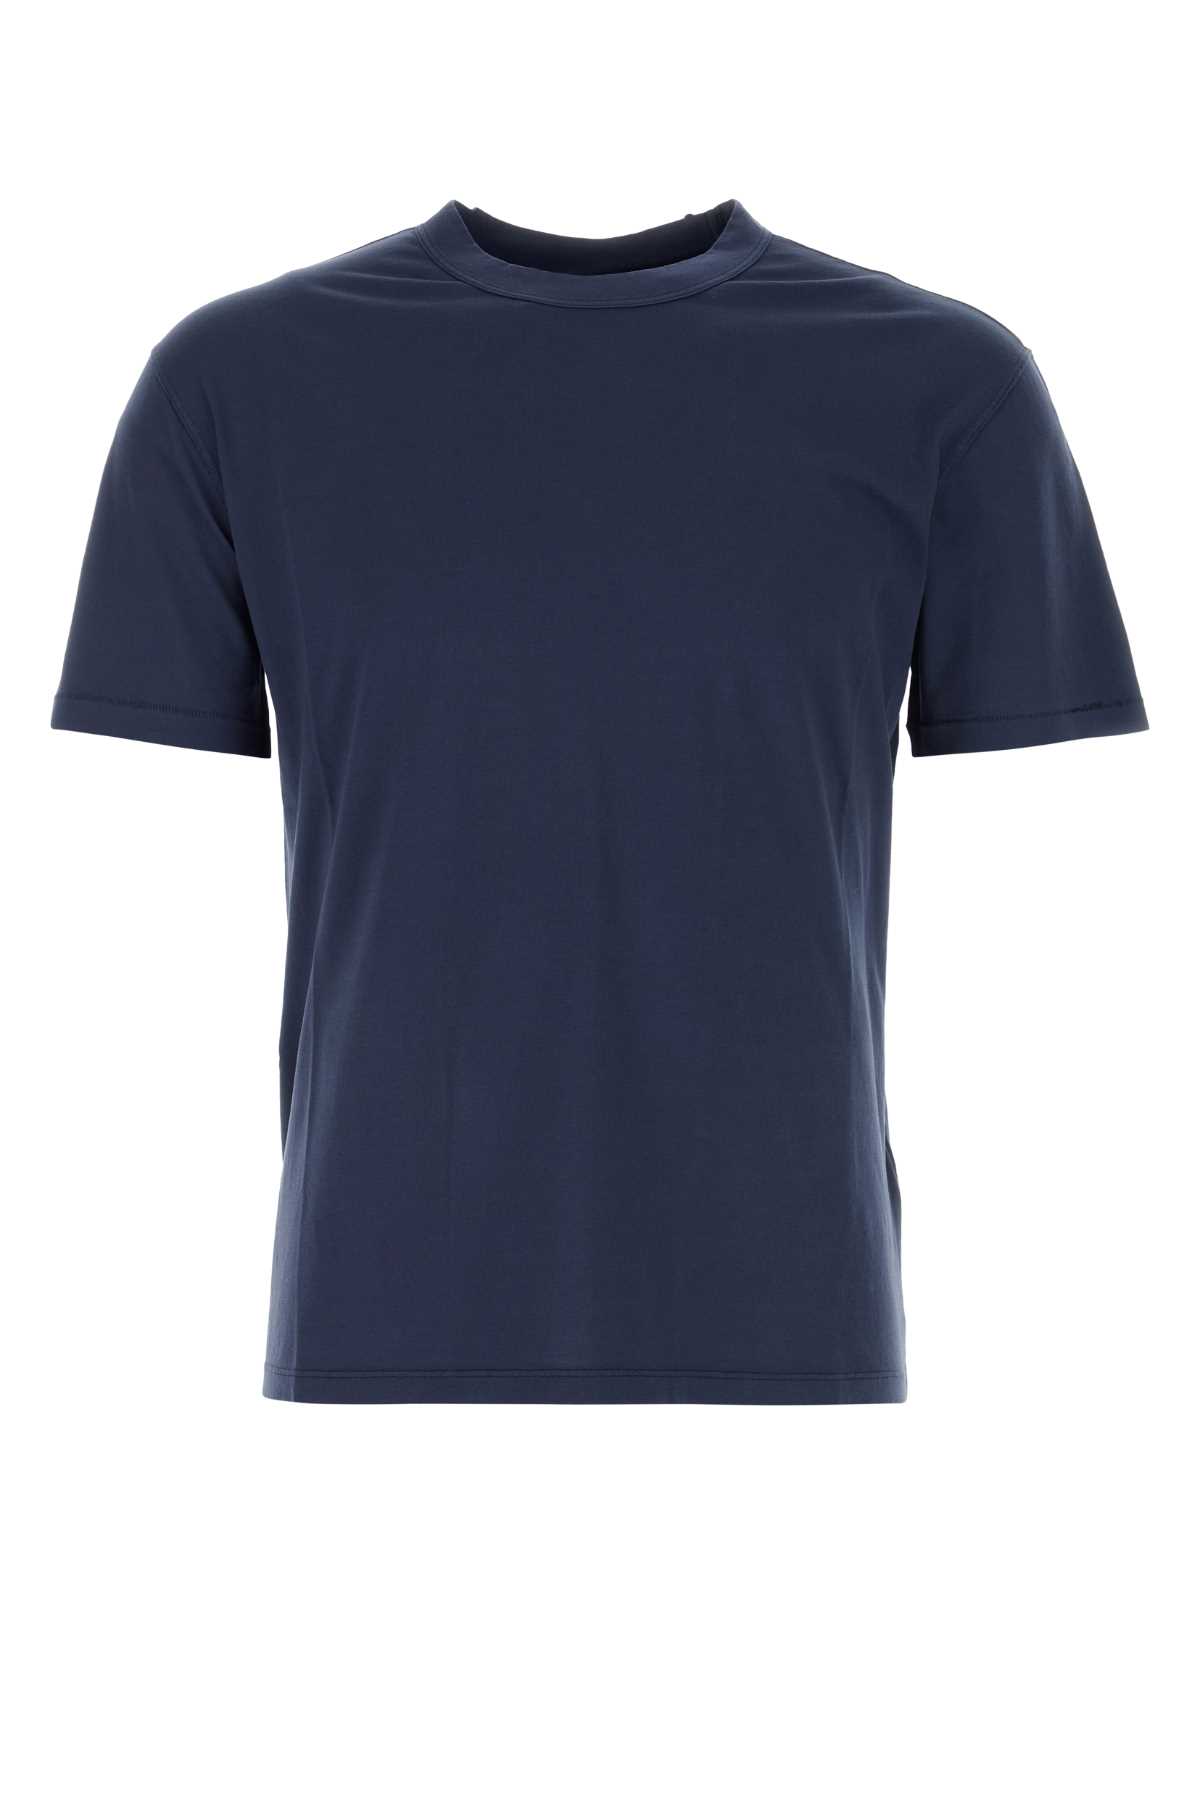 Navy Blue Cotton T-shirt